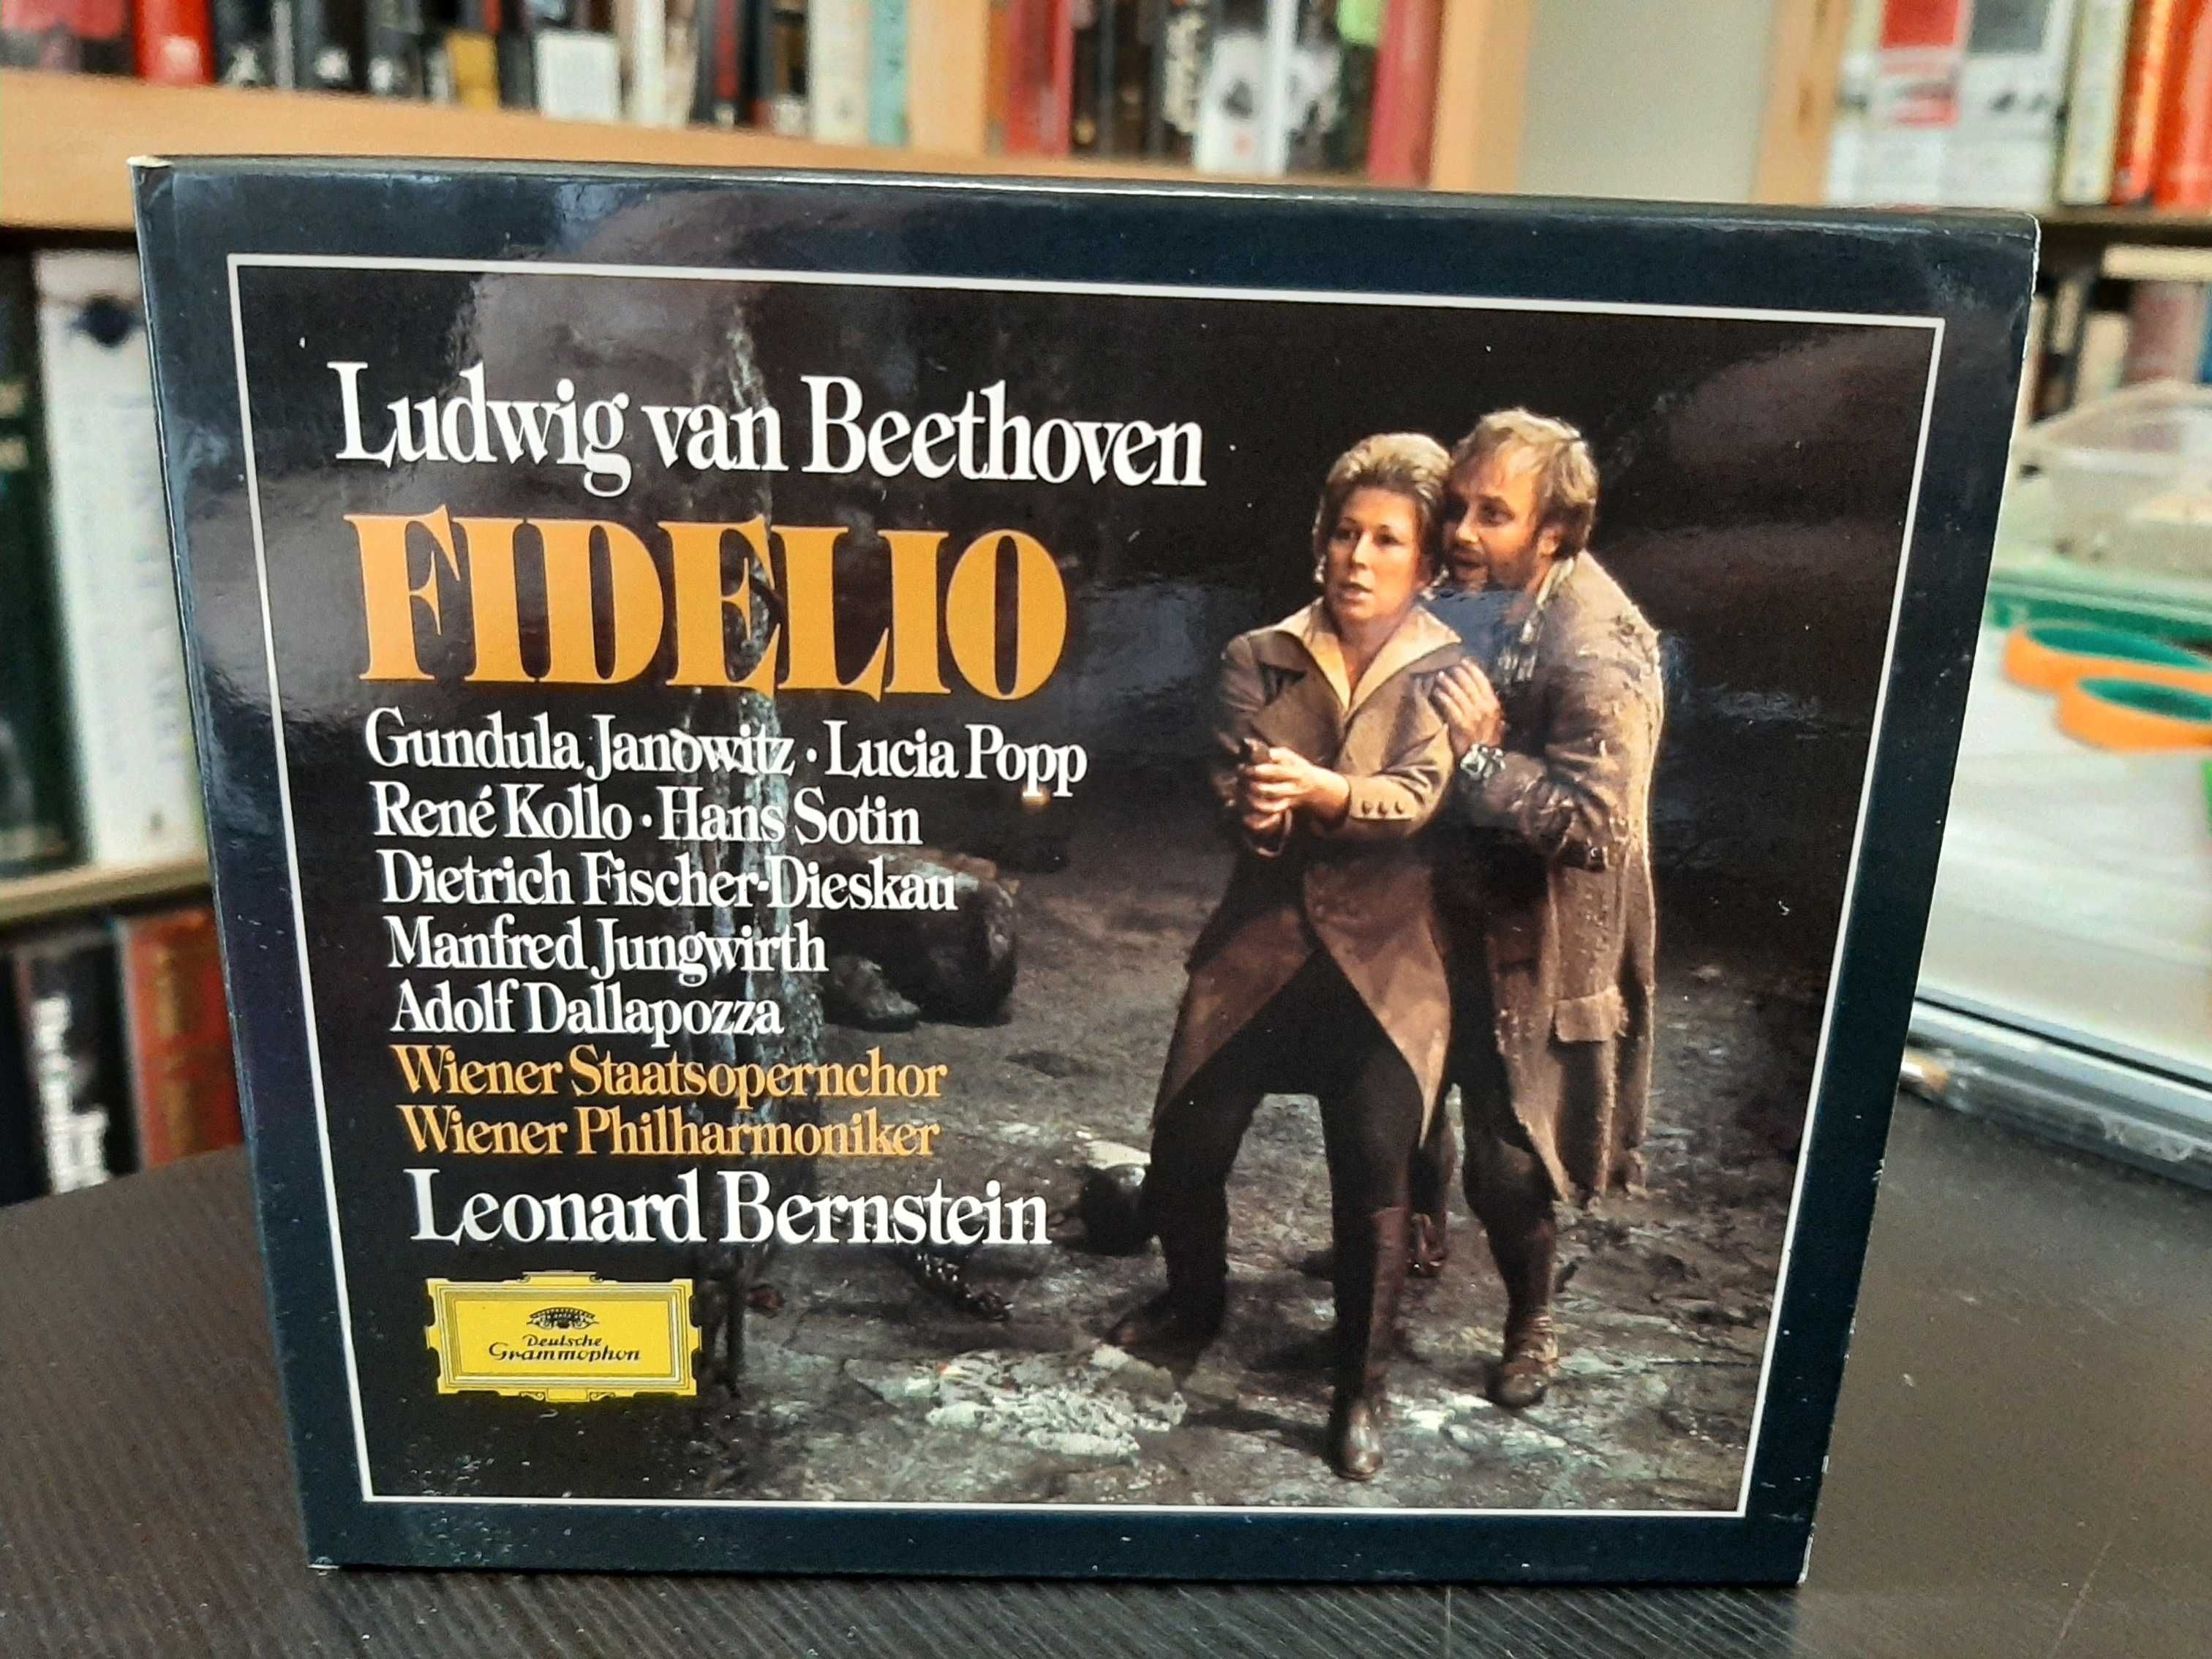 Beethoven: Fidelio - Gundula Janowitz - Fischer-Diskau - Bernstein